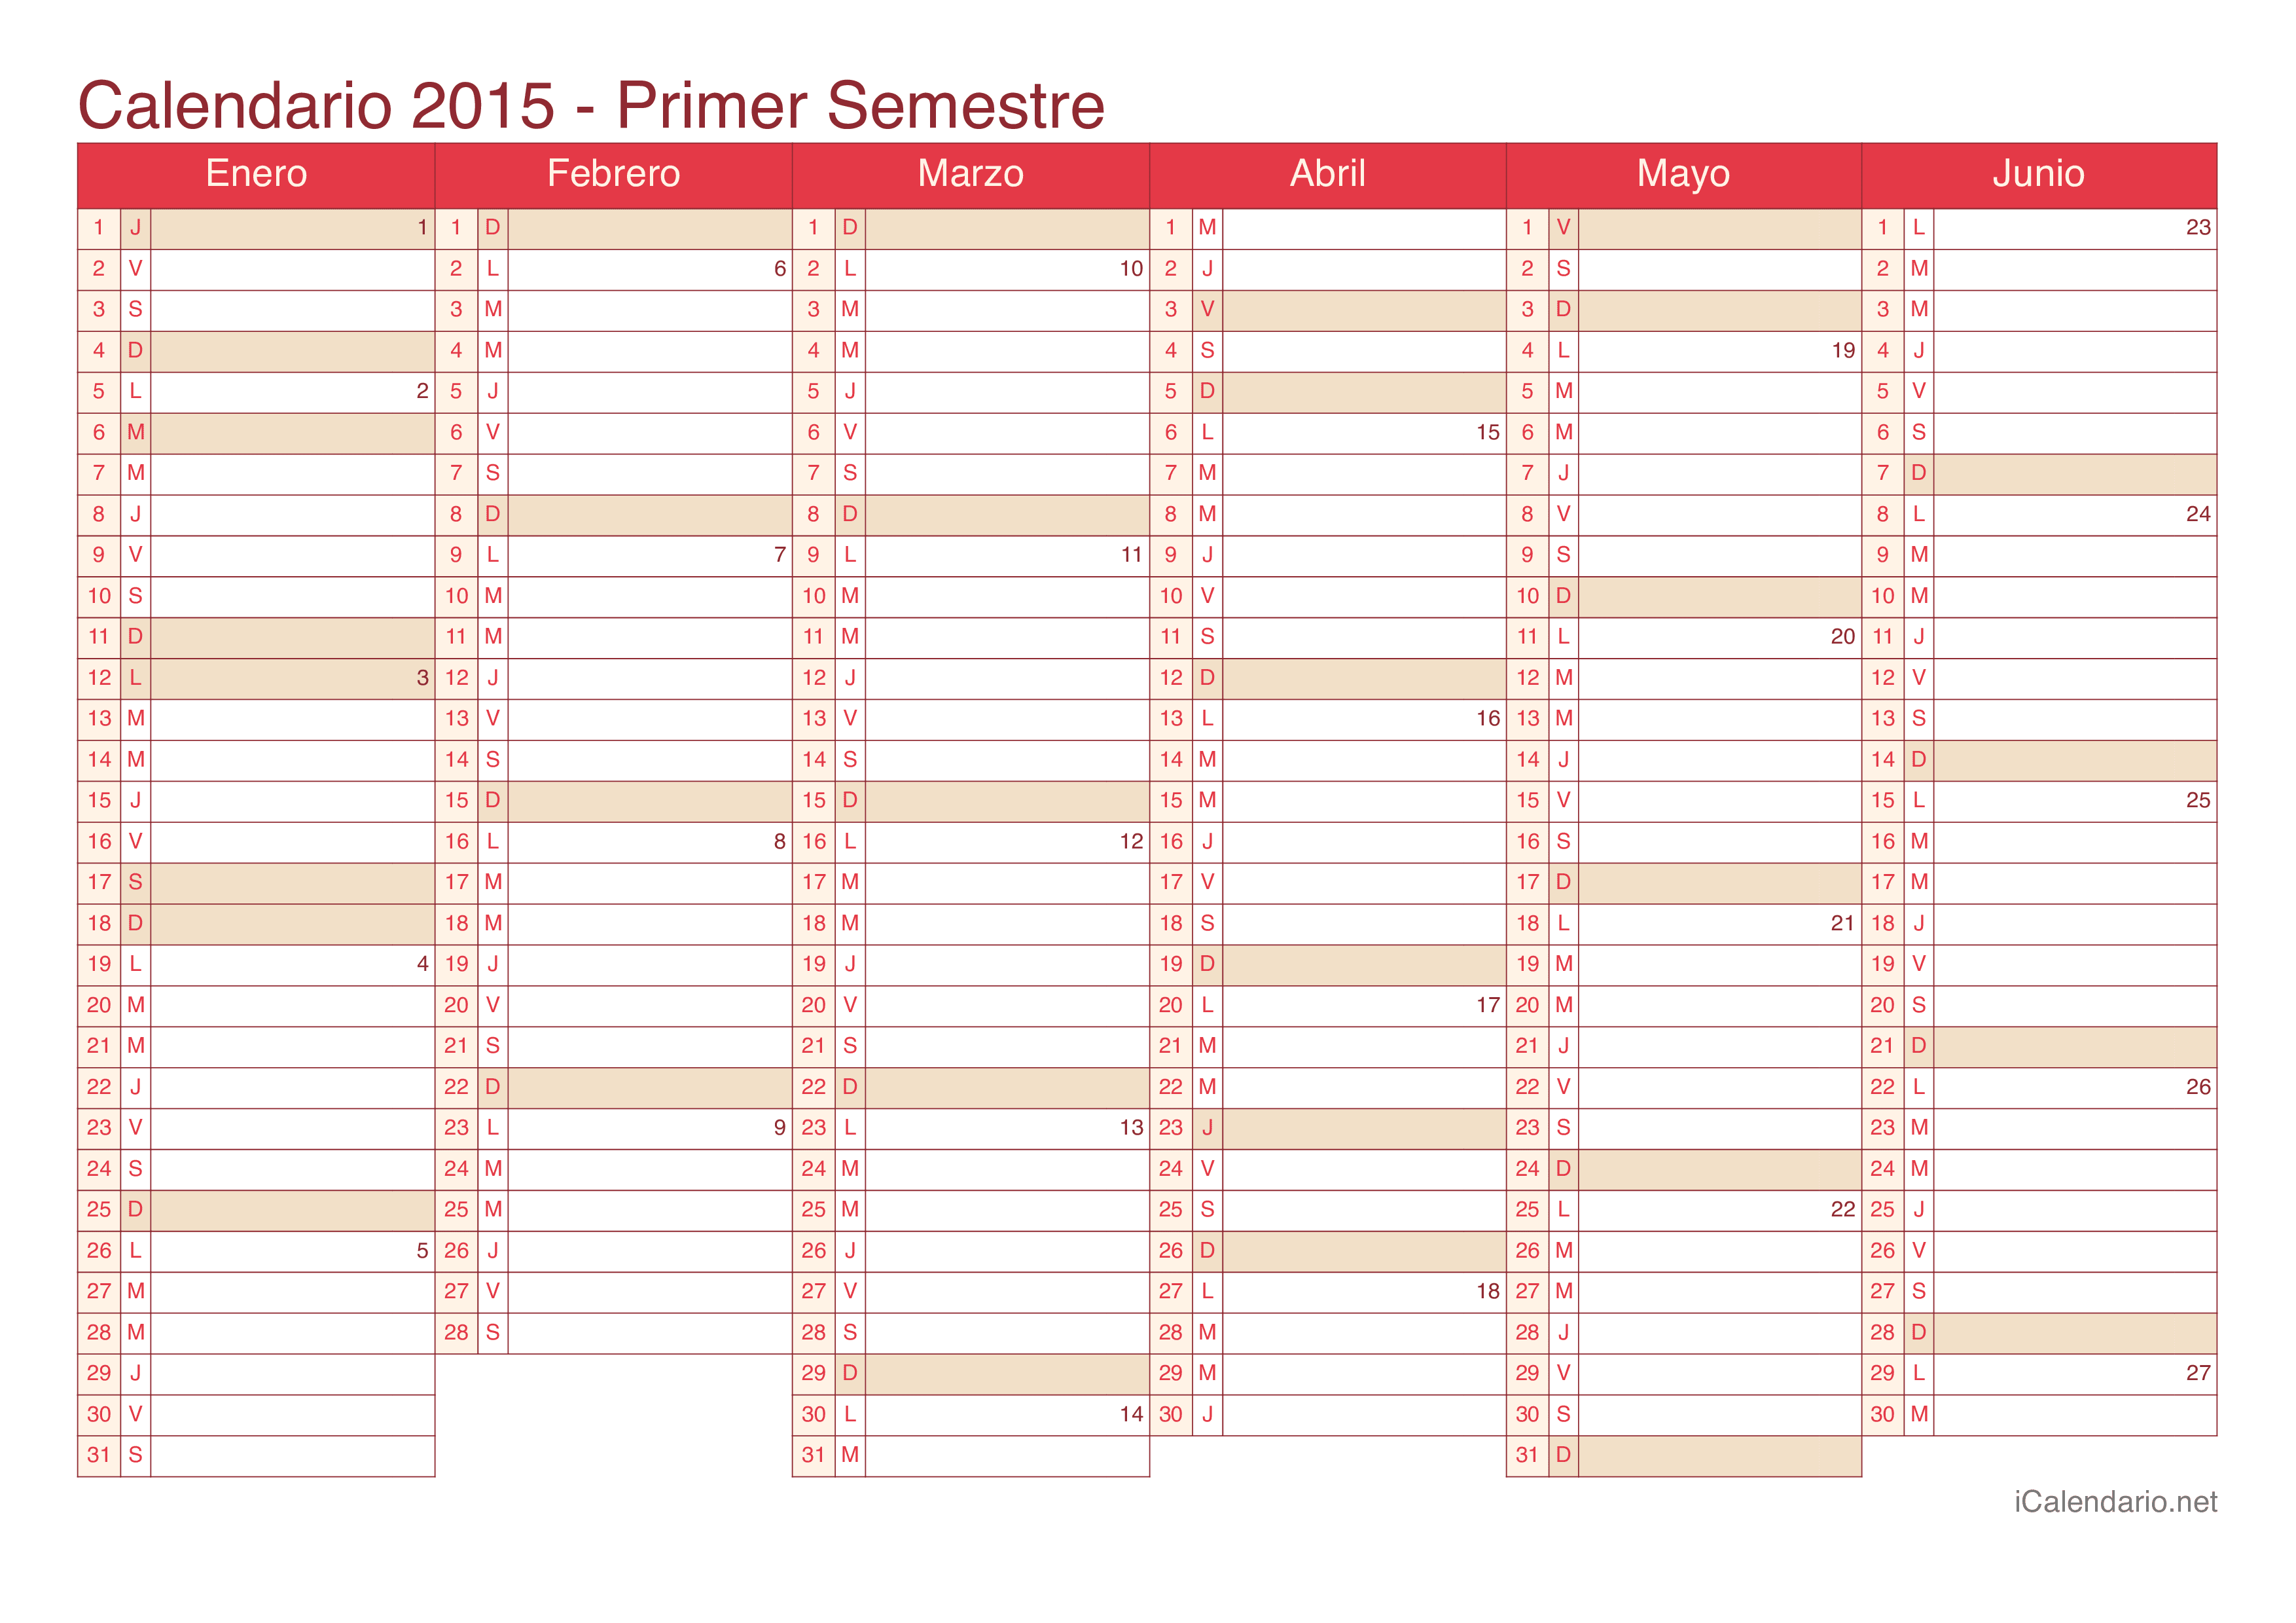 Calendario por semestre com números da semana 2015 - Cherry